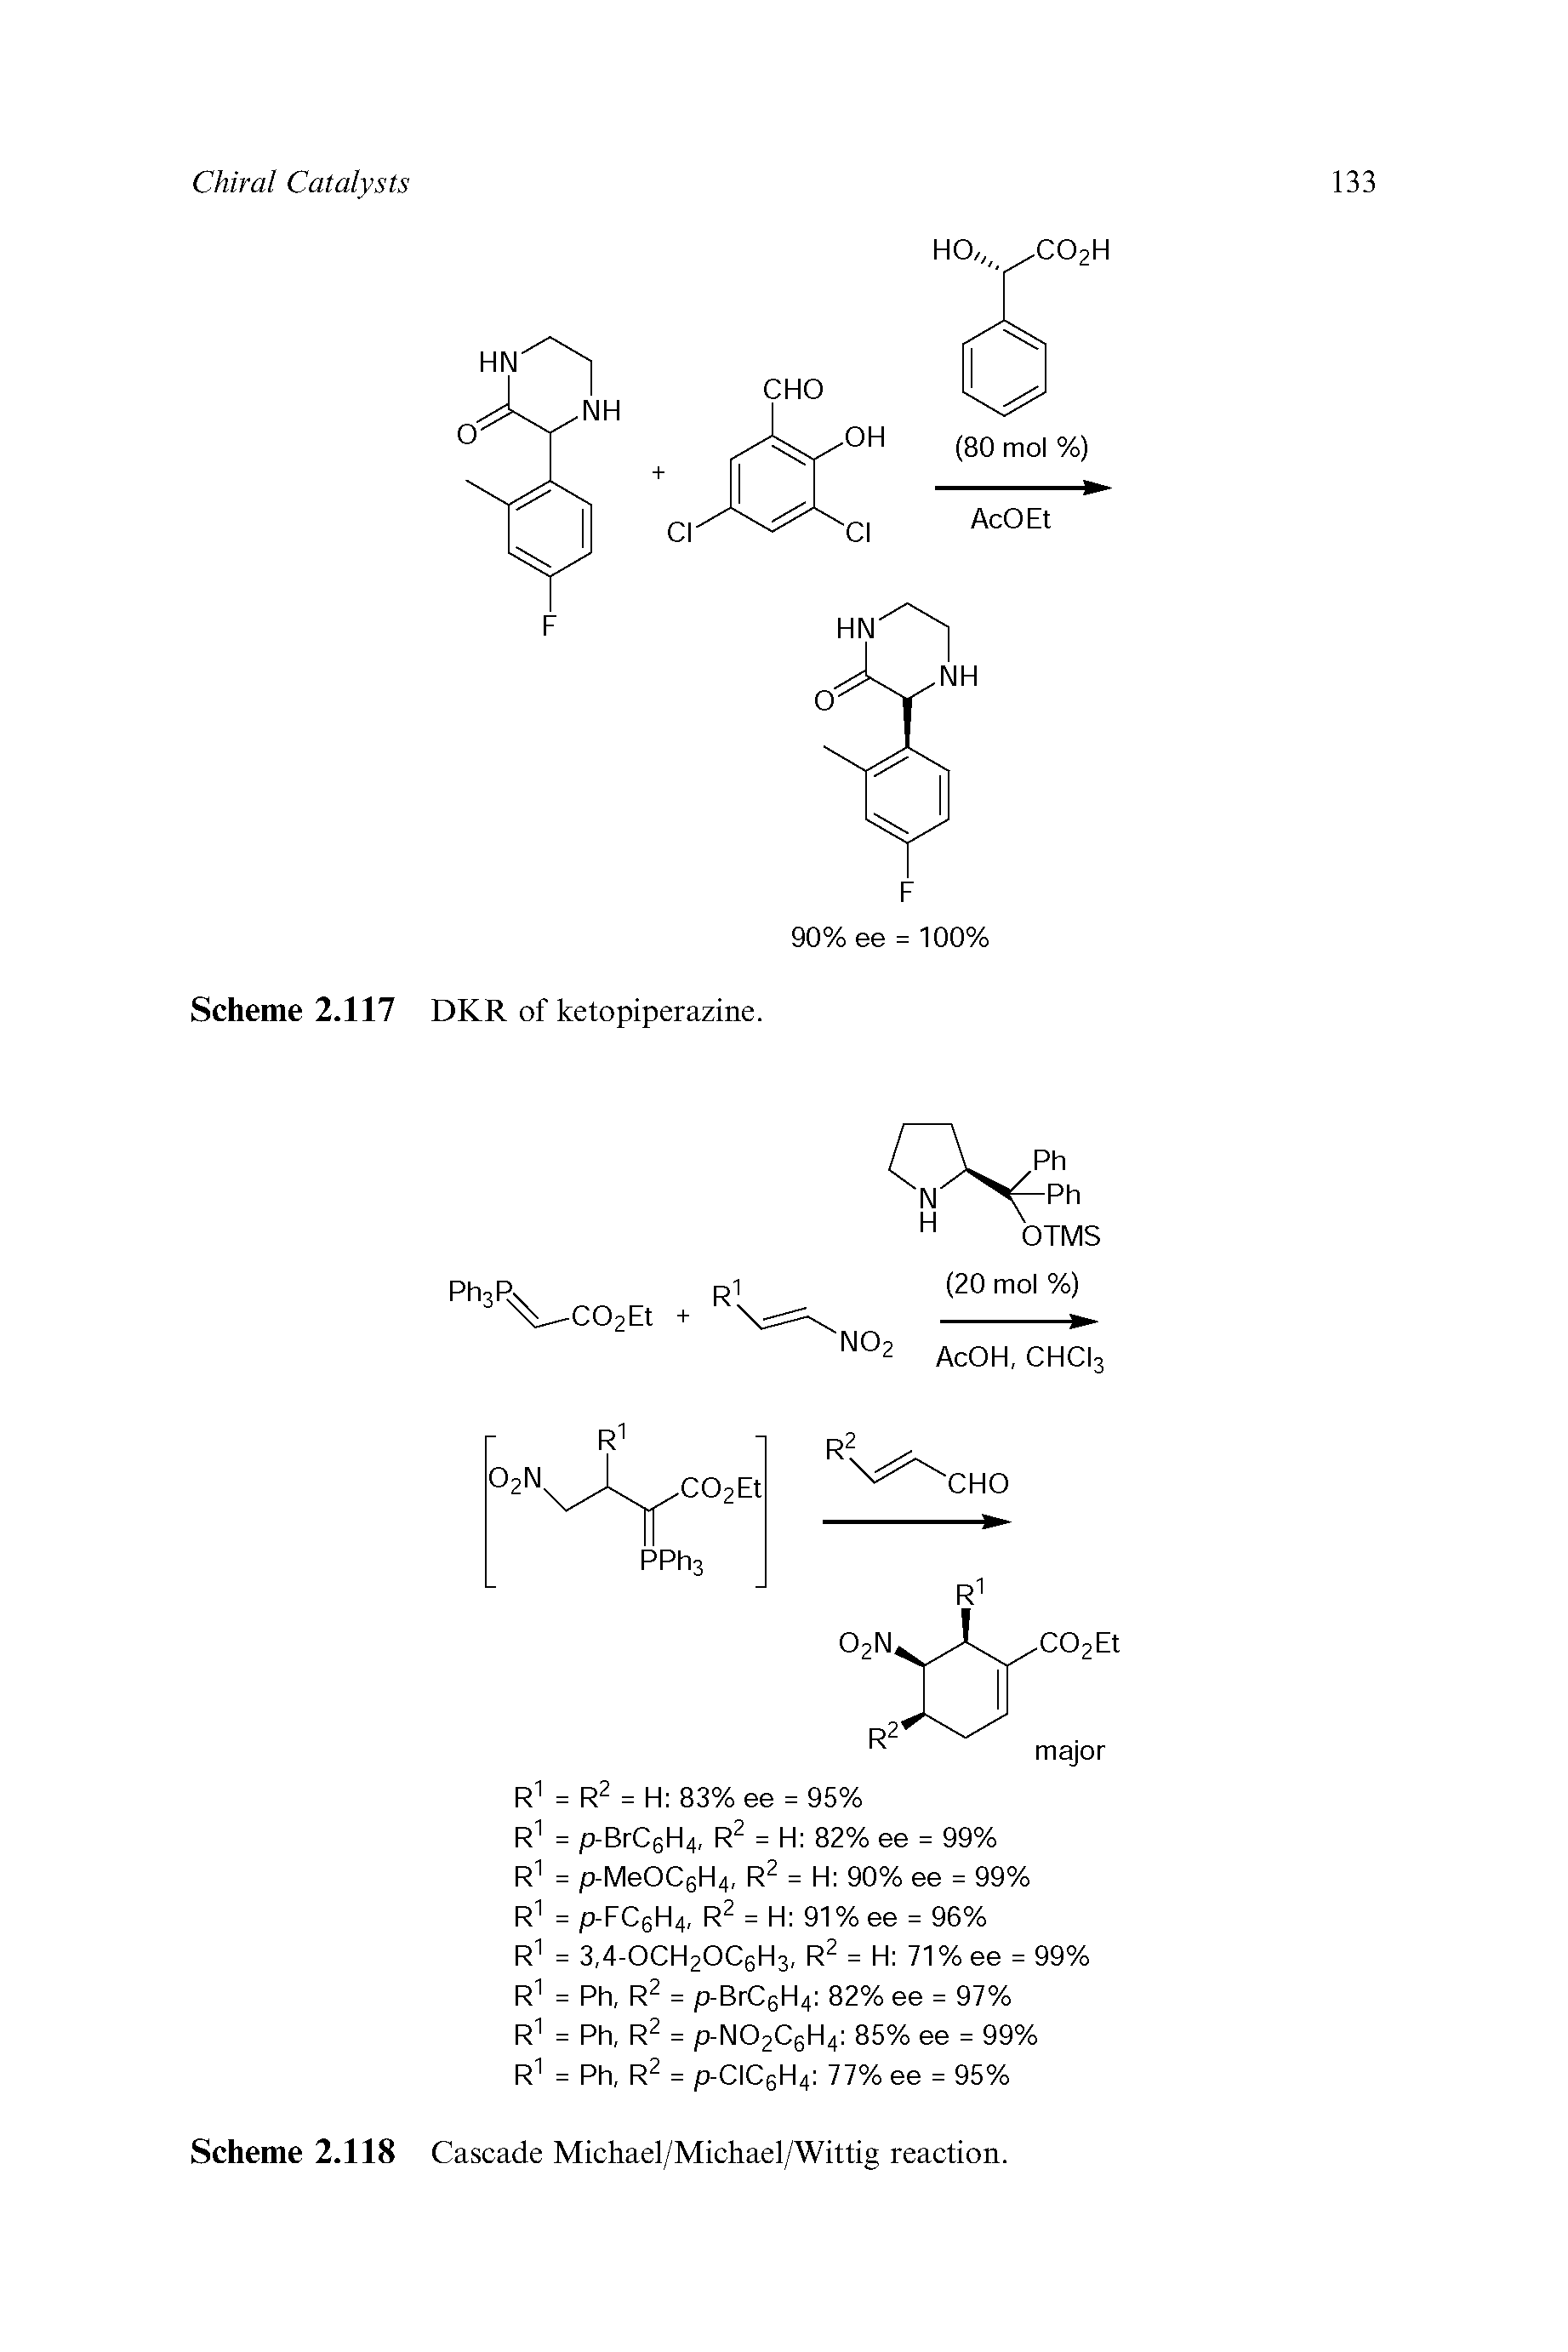 Scheme 2.118 Cascade Michael/Michael/Wittig reaction.